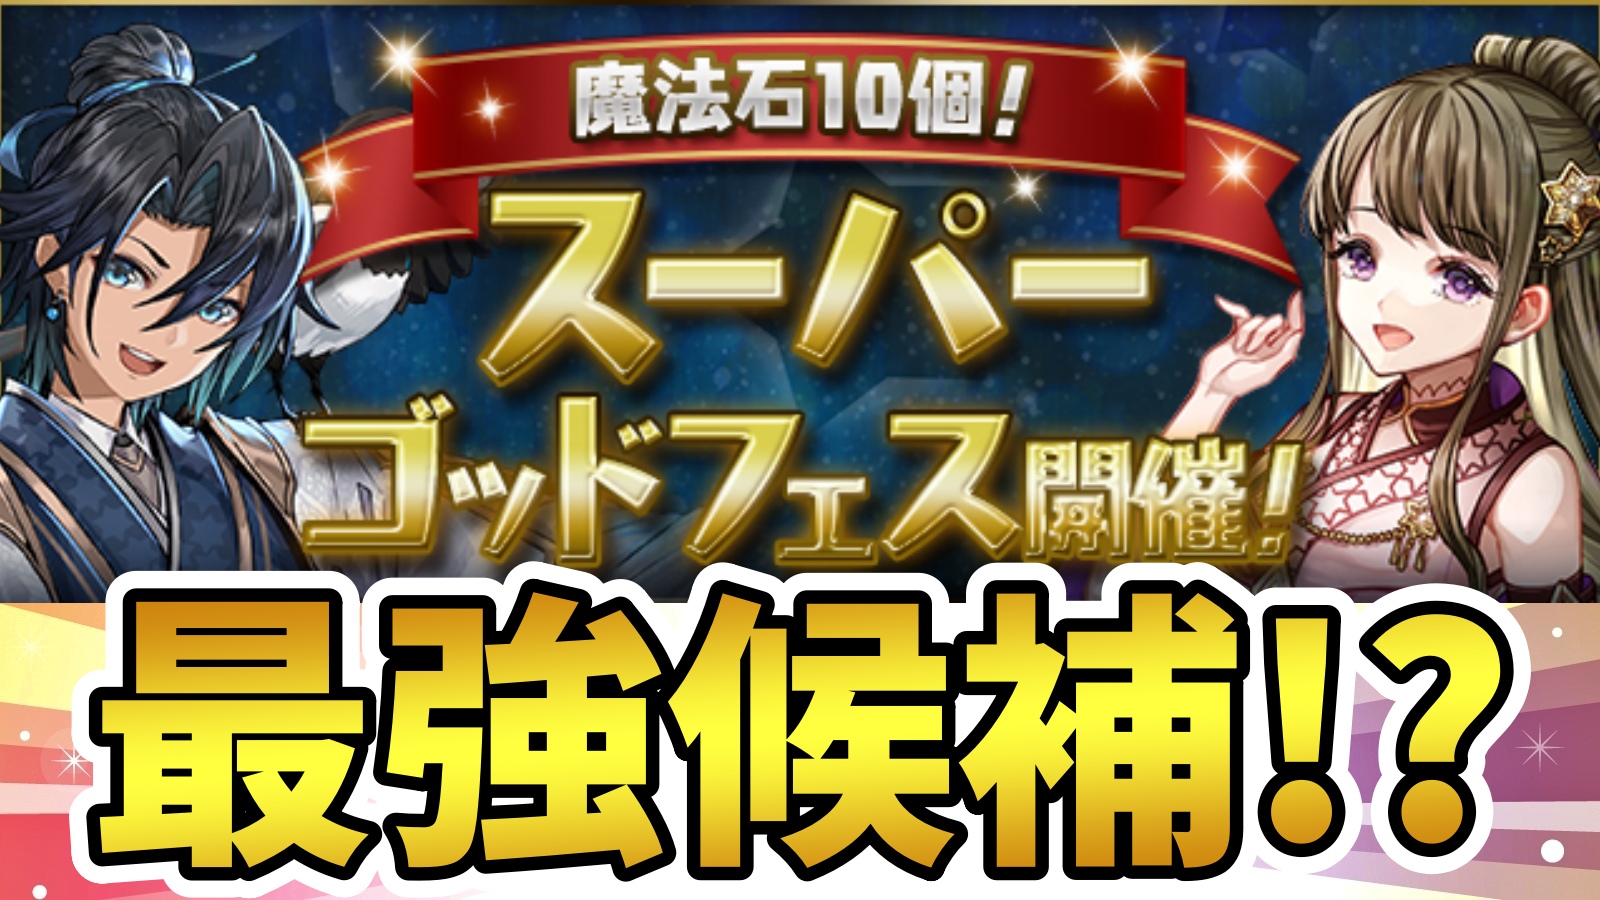 【パズドラ】最強リーダー候補『新フェス限』が登場! 魔法石10個 スーパーゴッドフェス開催!